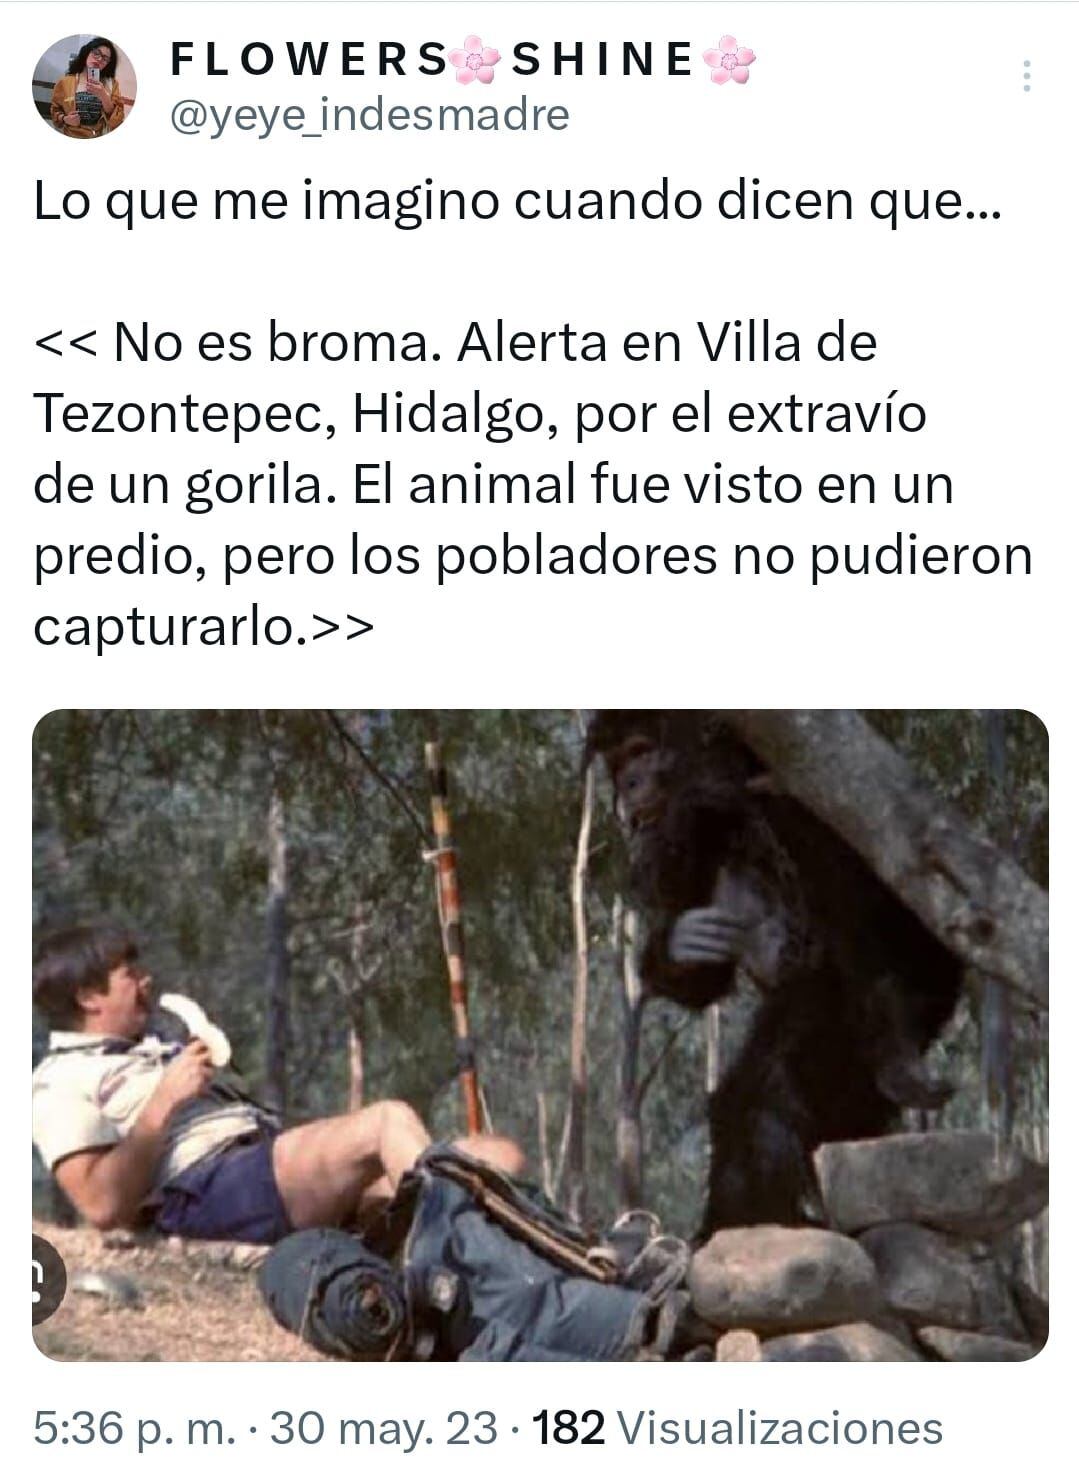 Meme sobre el gorila de Hidalgo (captura de pantalla)